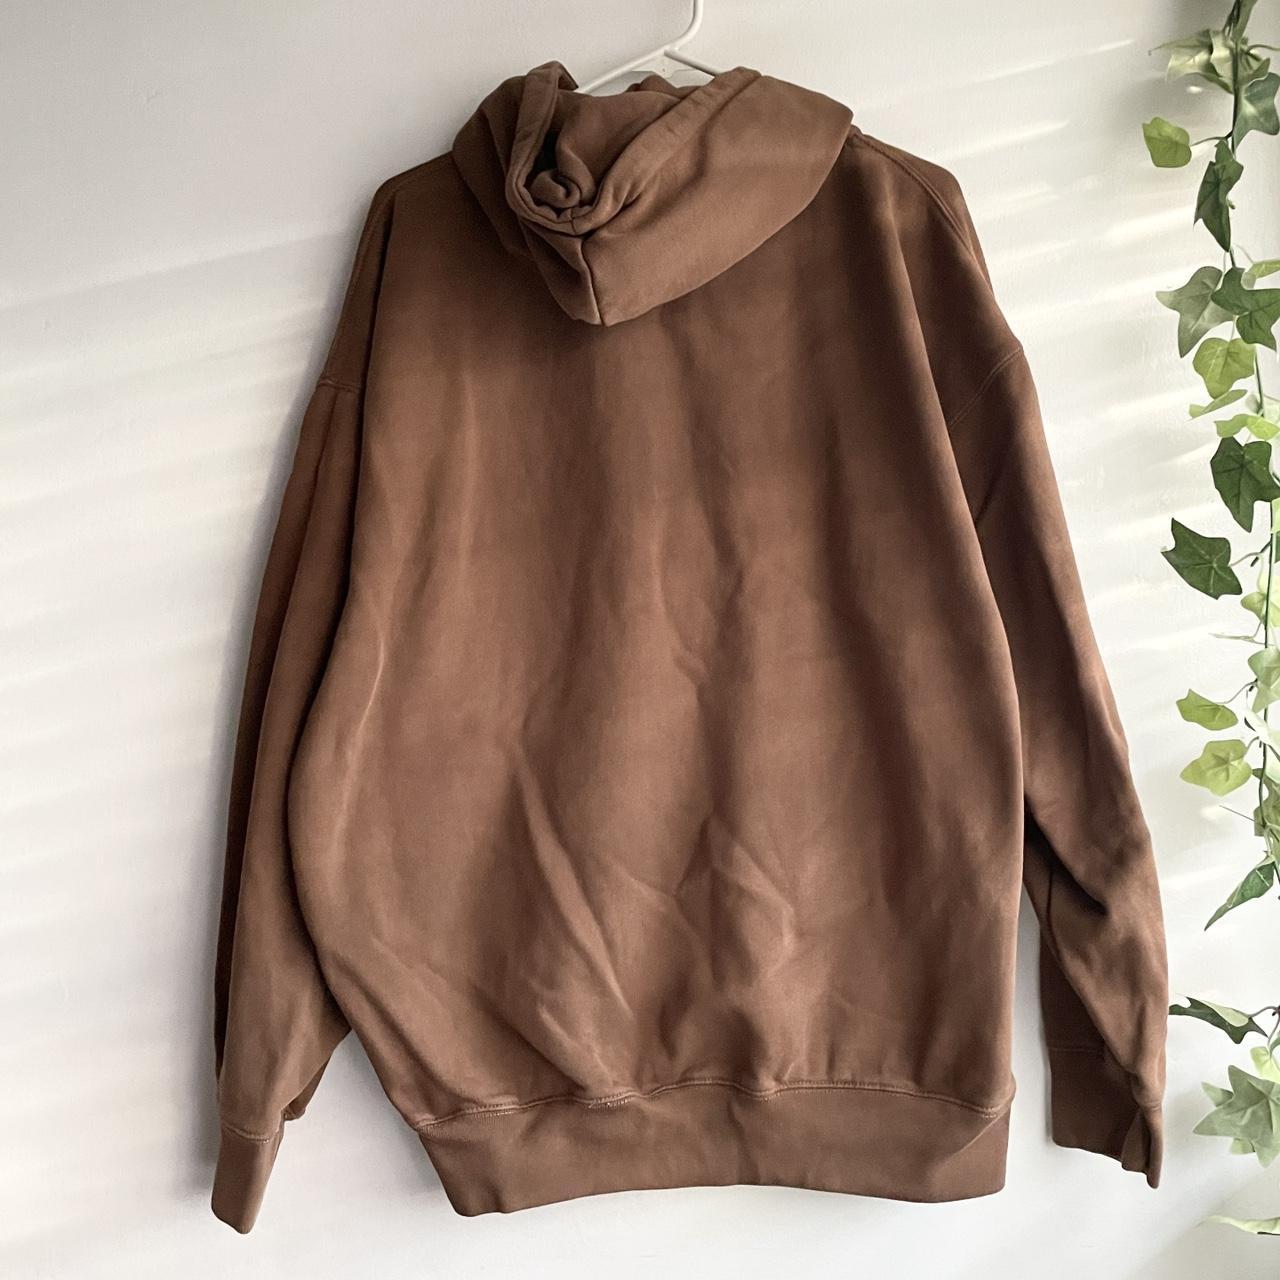 Brandy Melville brown cozy christy zip up hoodie • - Depop